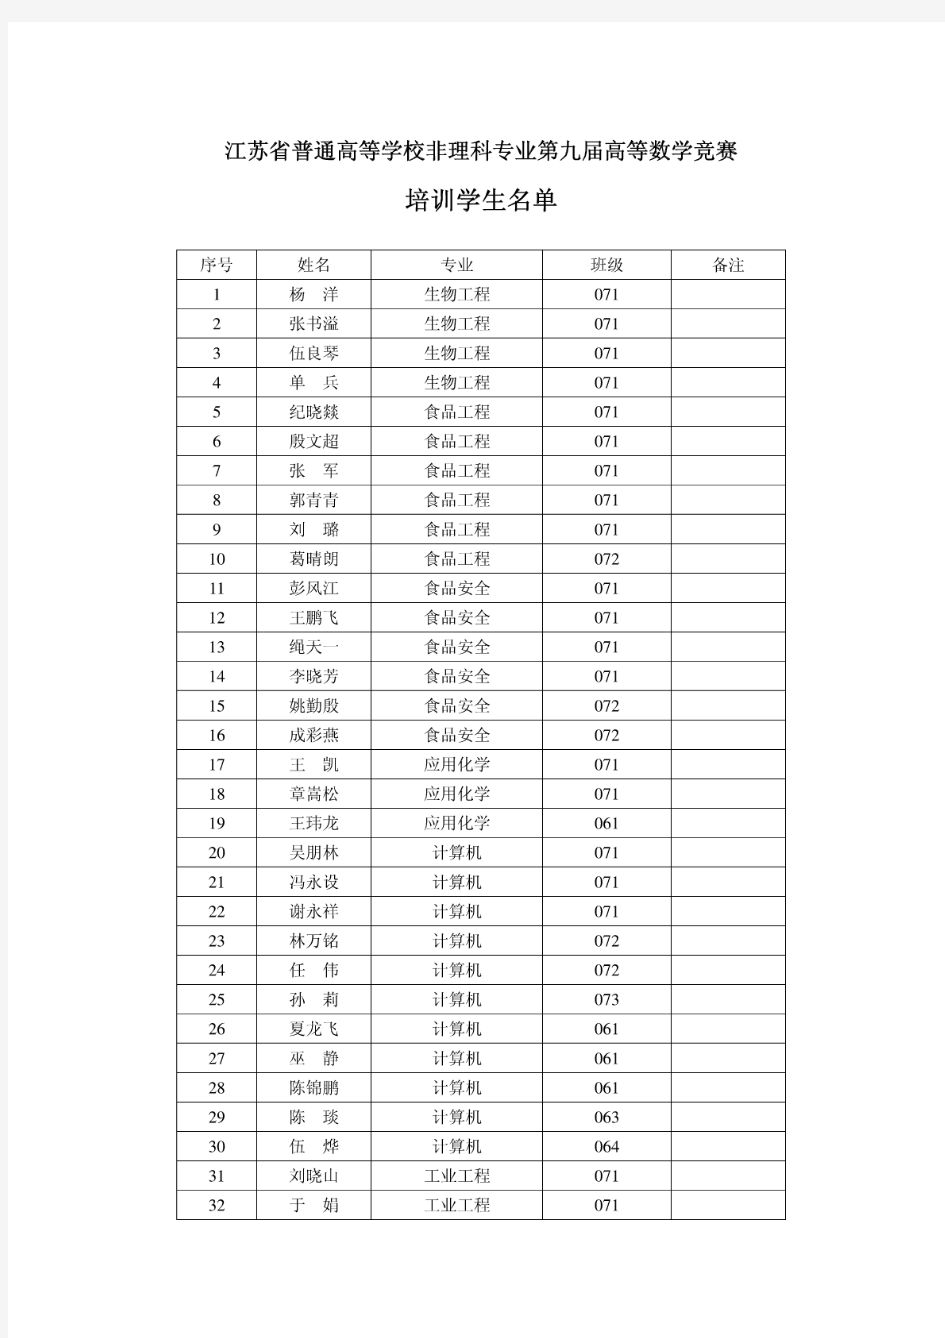 江苏省普通高等学校非理科专业第九届高等数学竞赛